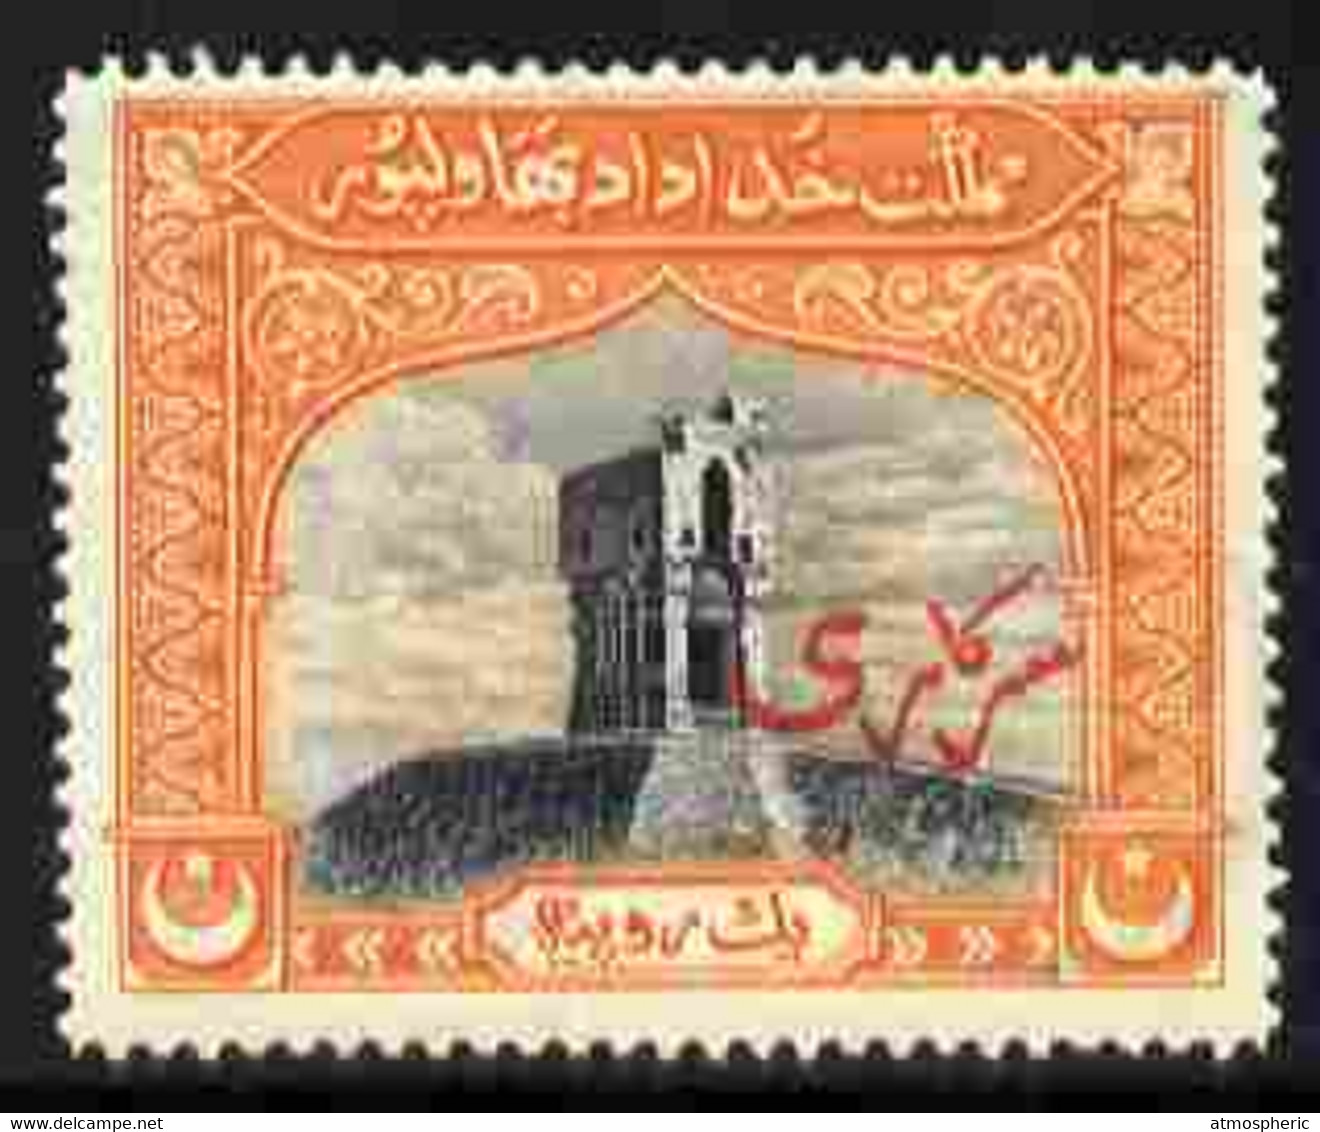 Bahawalpur 1945 Official Overprint On Temple 1r Unmounted Mint Tiny Ink Mark On Gum, SG O6 - Bahawalpur